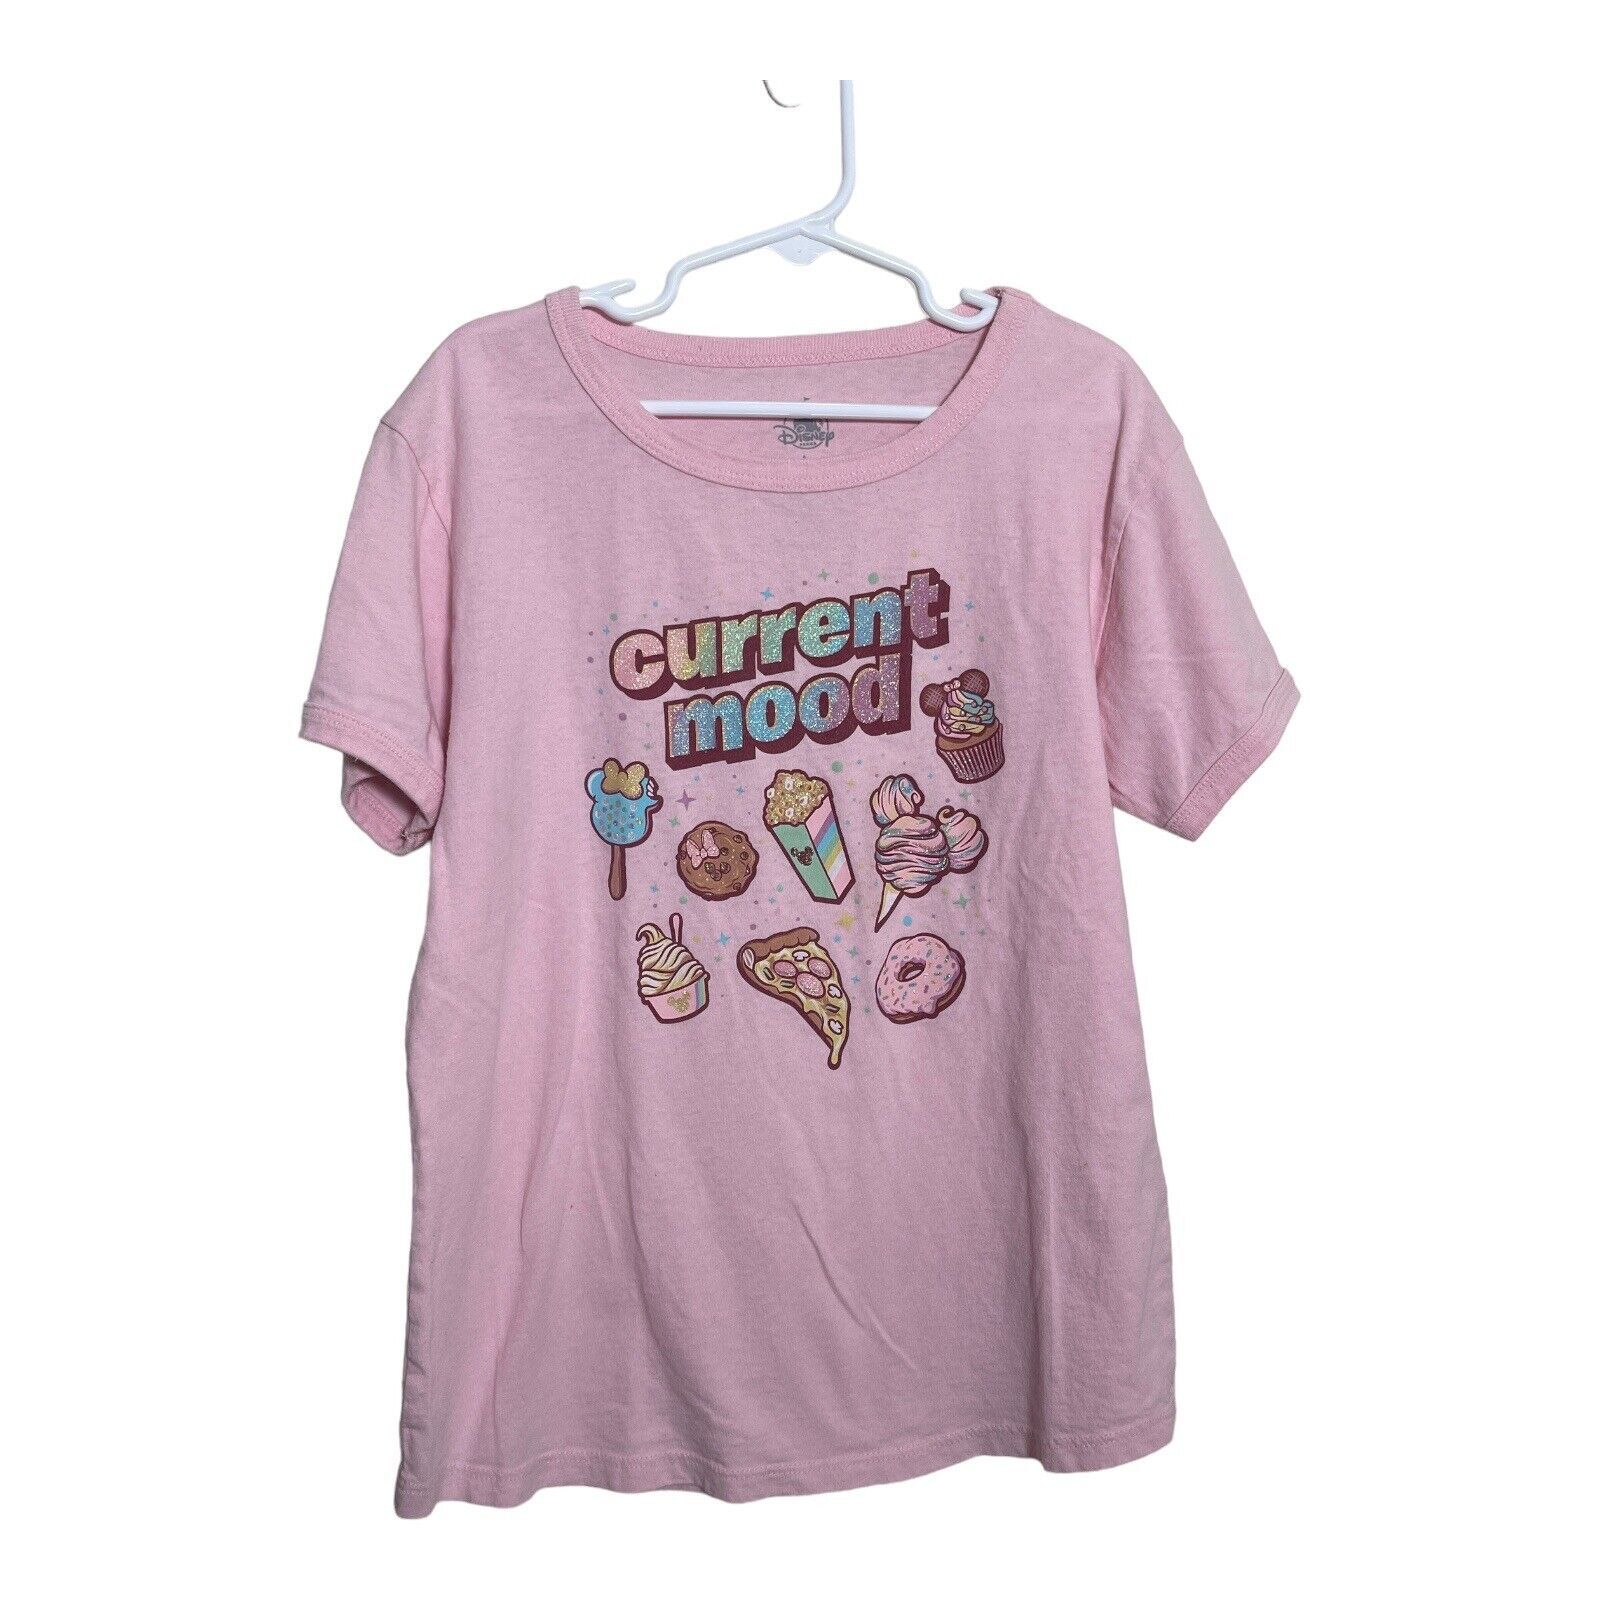 Disney Parks Current Mood Food Girls T-Shirt Large Pink Sparkles